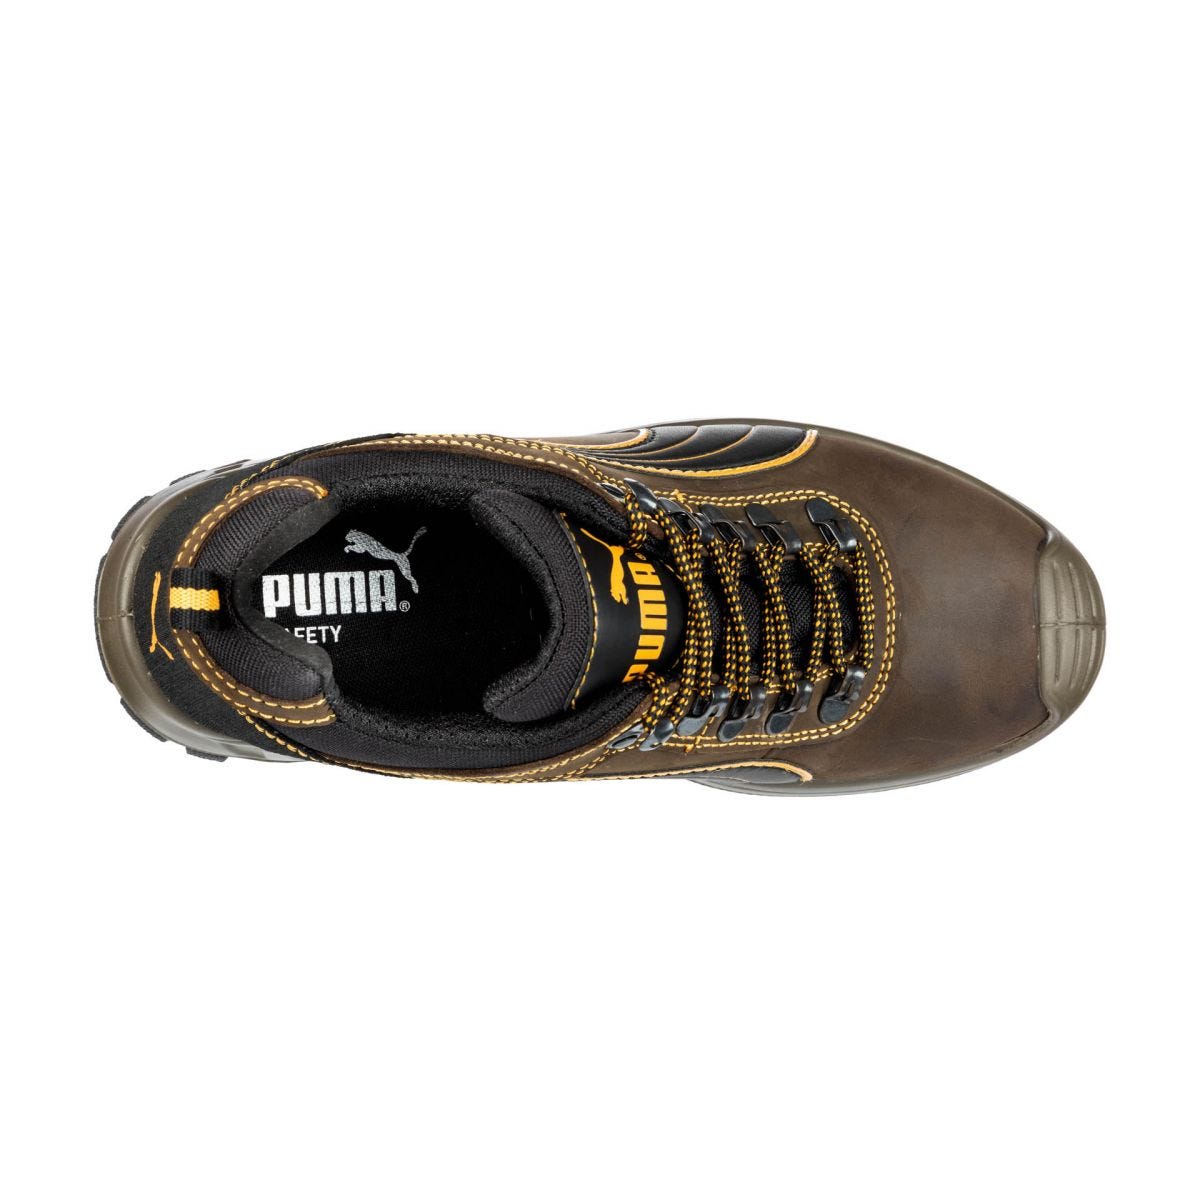 Chaussures de sécurité Sierra Nevada low S3 HRO SRC - Puma - Taille 47 2